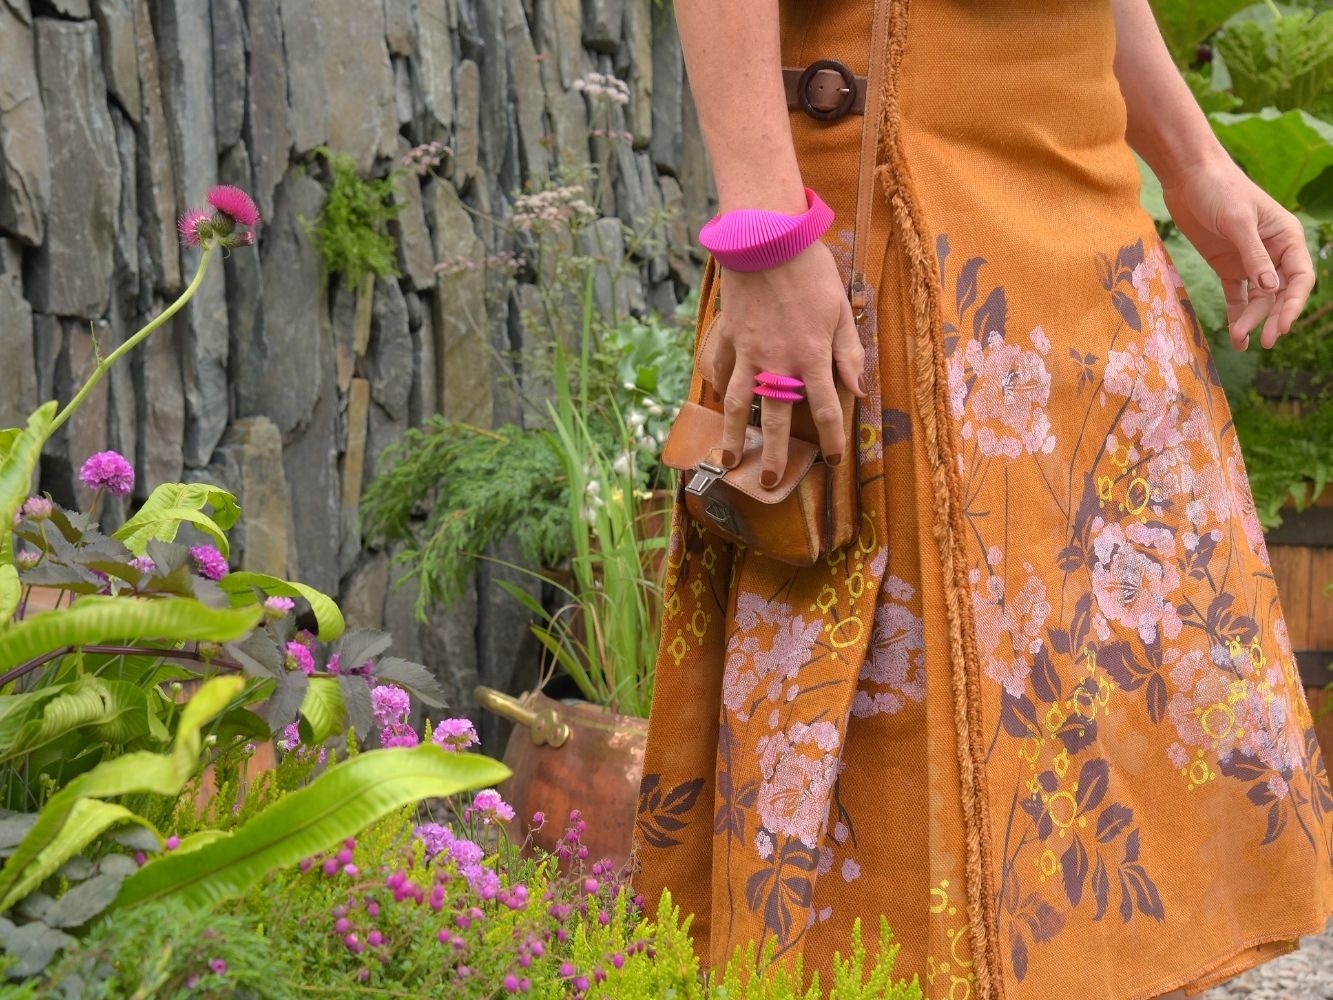 Model wearing orange, flower printed skirt walking through a garden